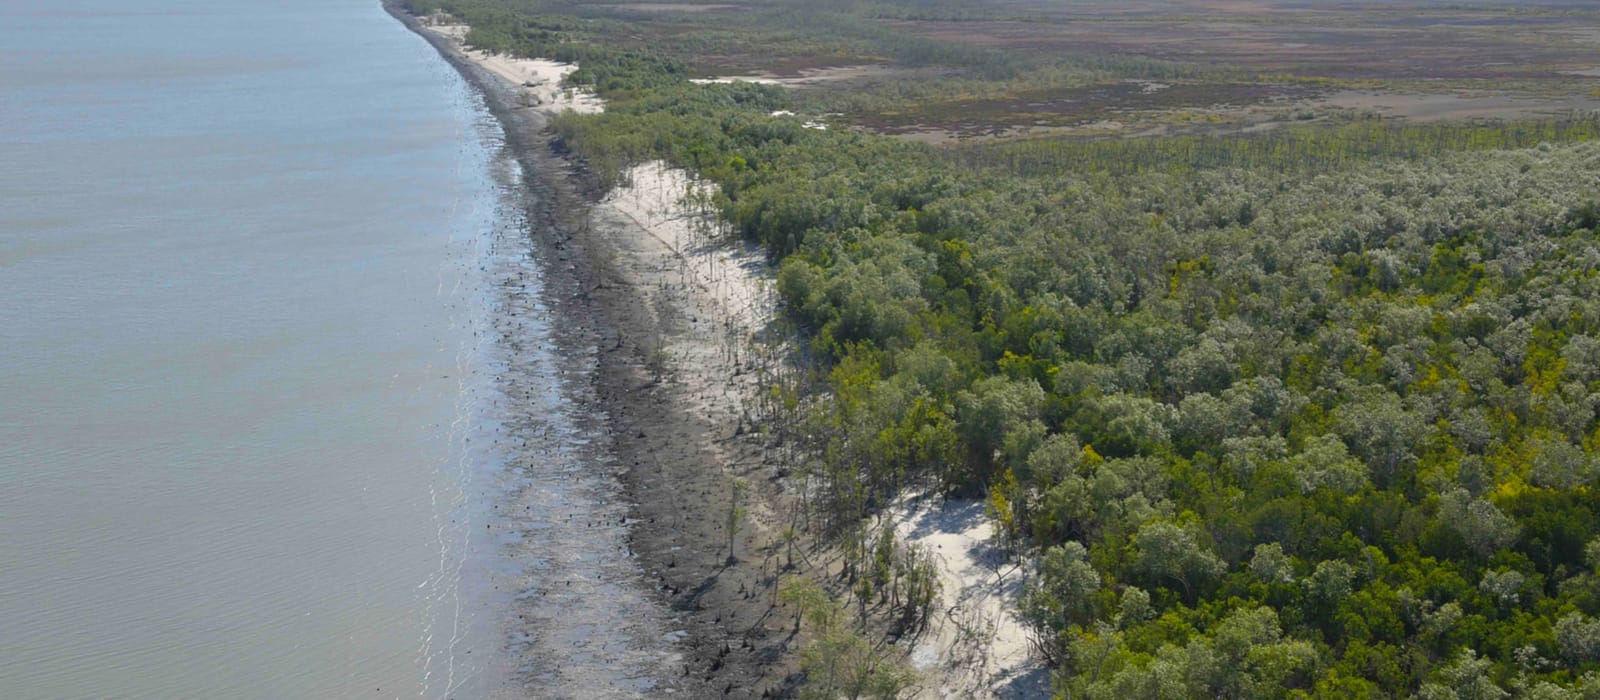 400km of dead mangroves